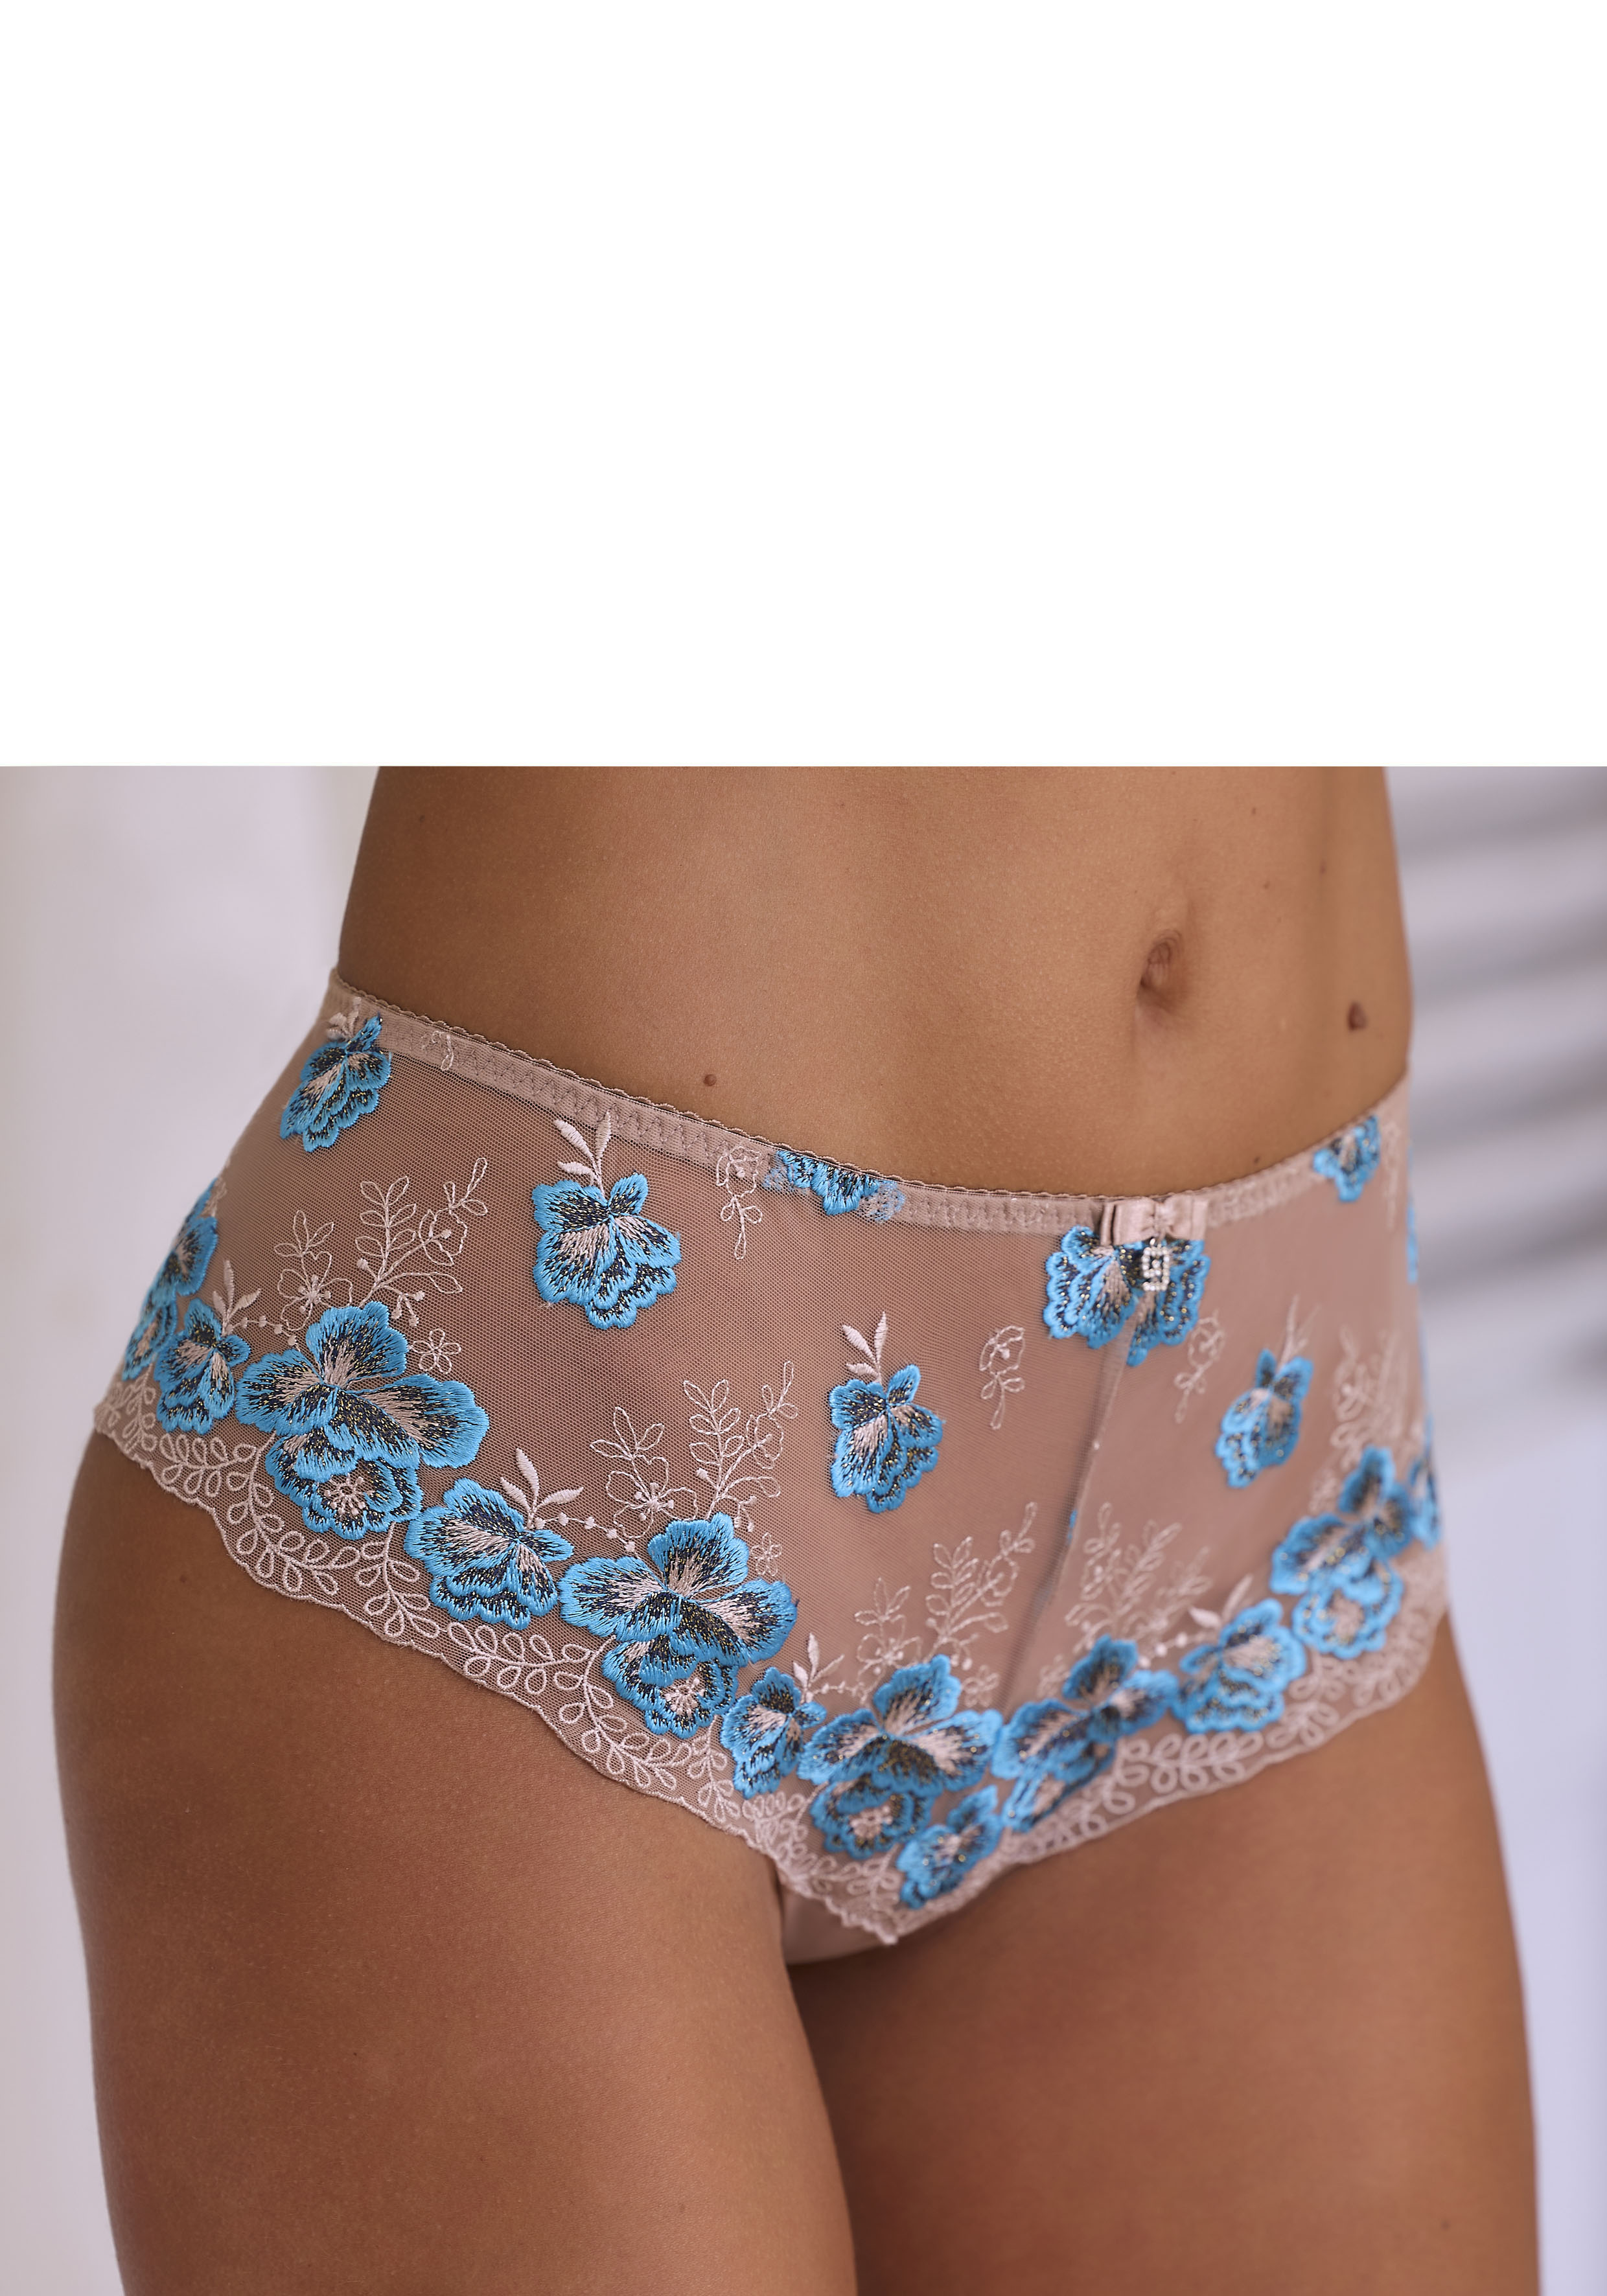 Nuance Panty, mit edler Stickereispitze in floraler Optik » LASCANA |  Bademode, Unterwäsche & Lingerie online kaufen